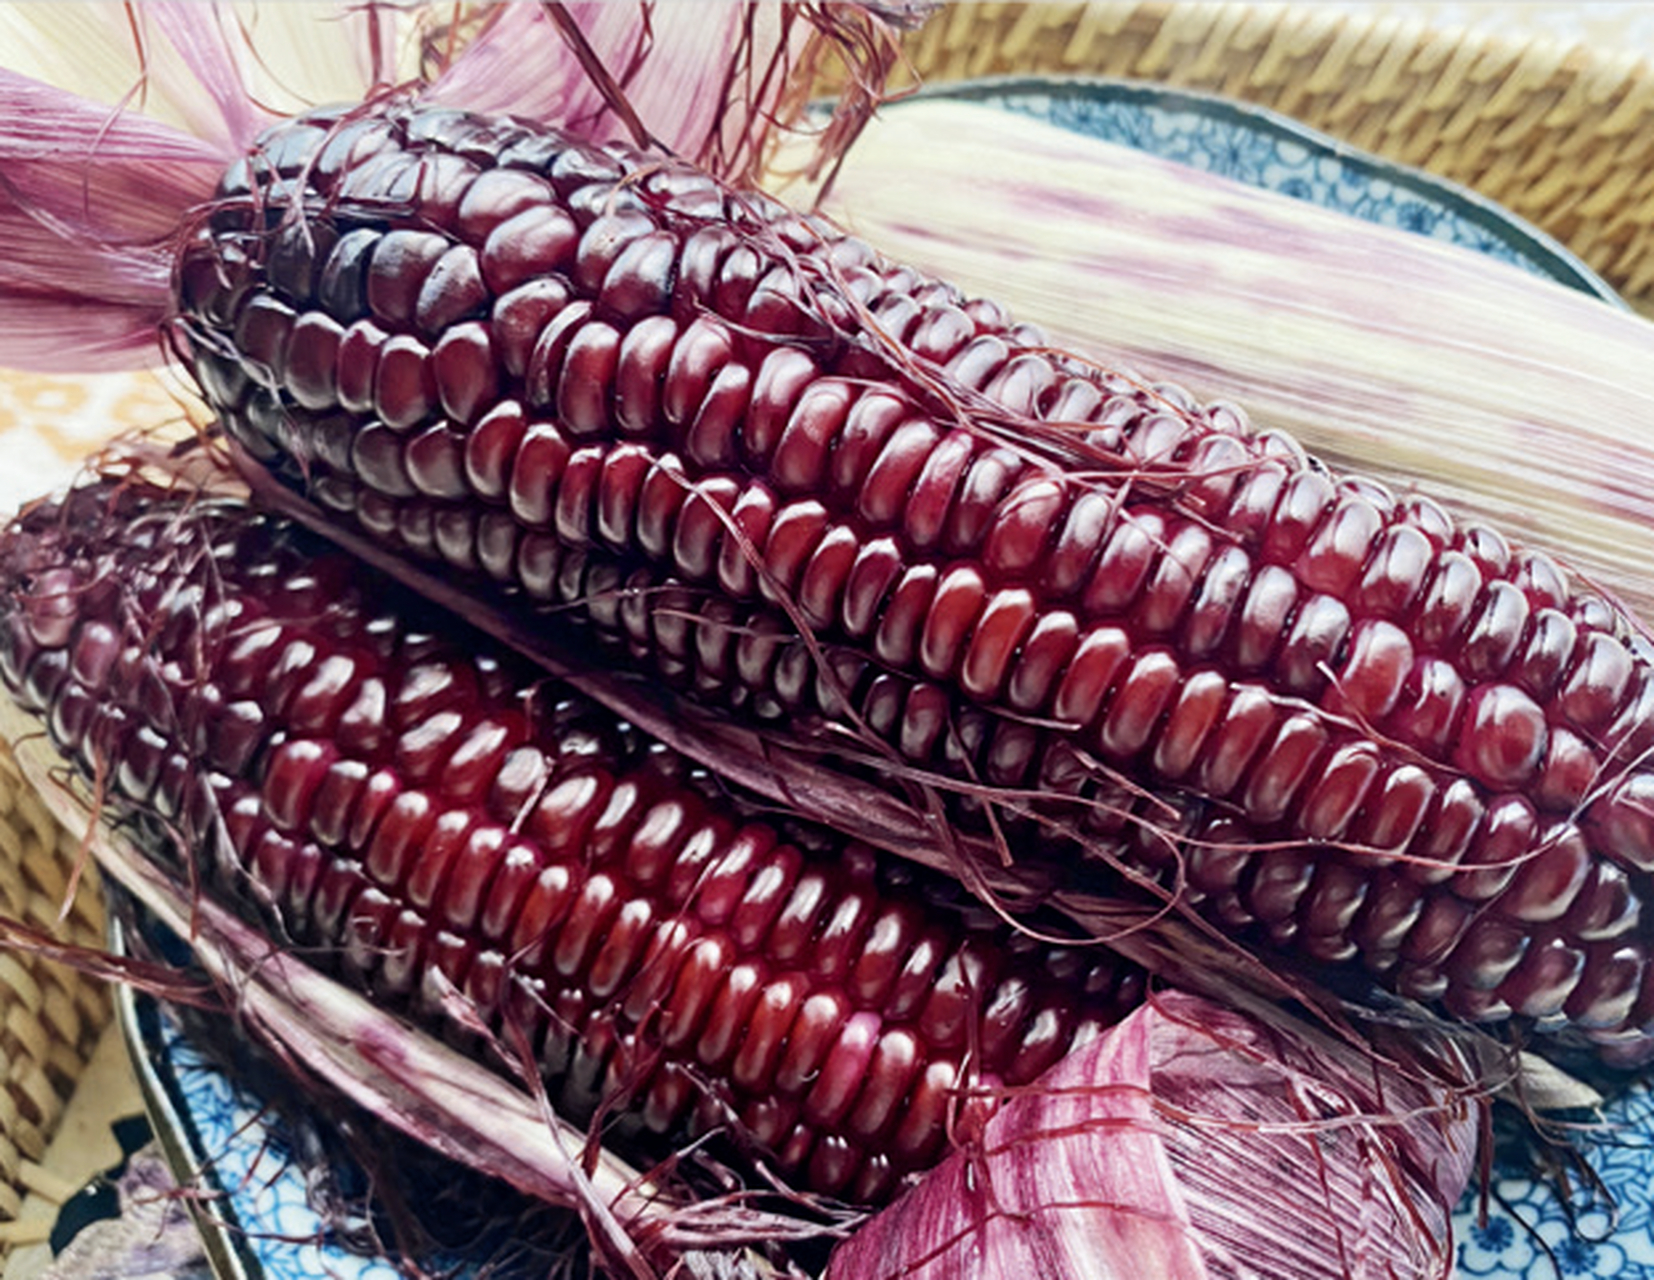 买回的紫玉米,煮后发现煮玉米的水都成紫红色了,怎么回事?